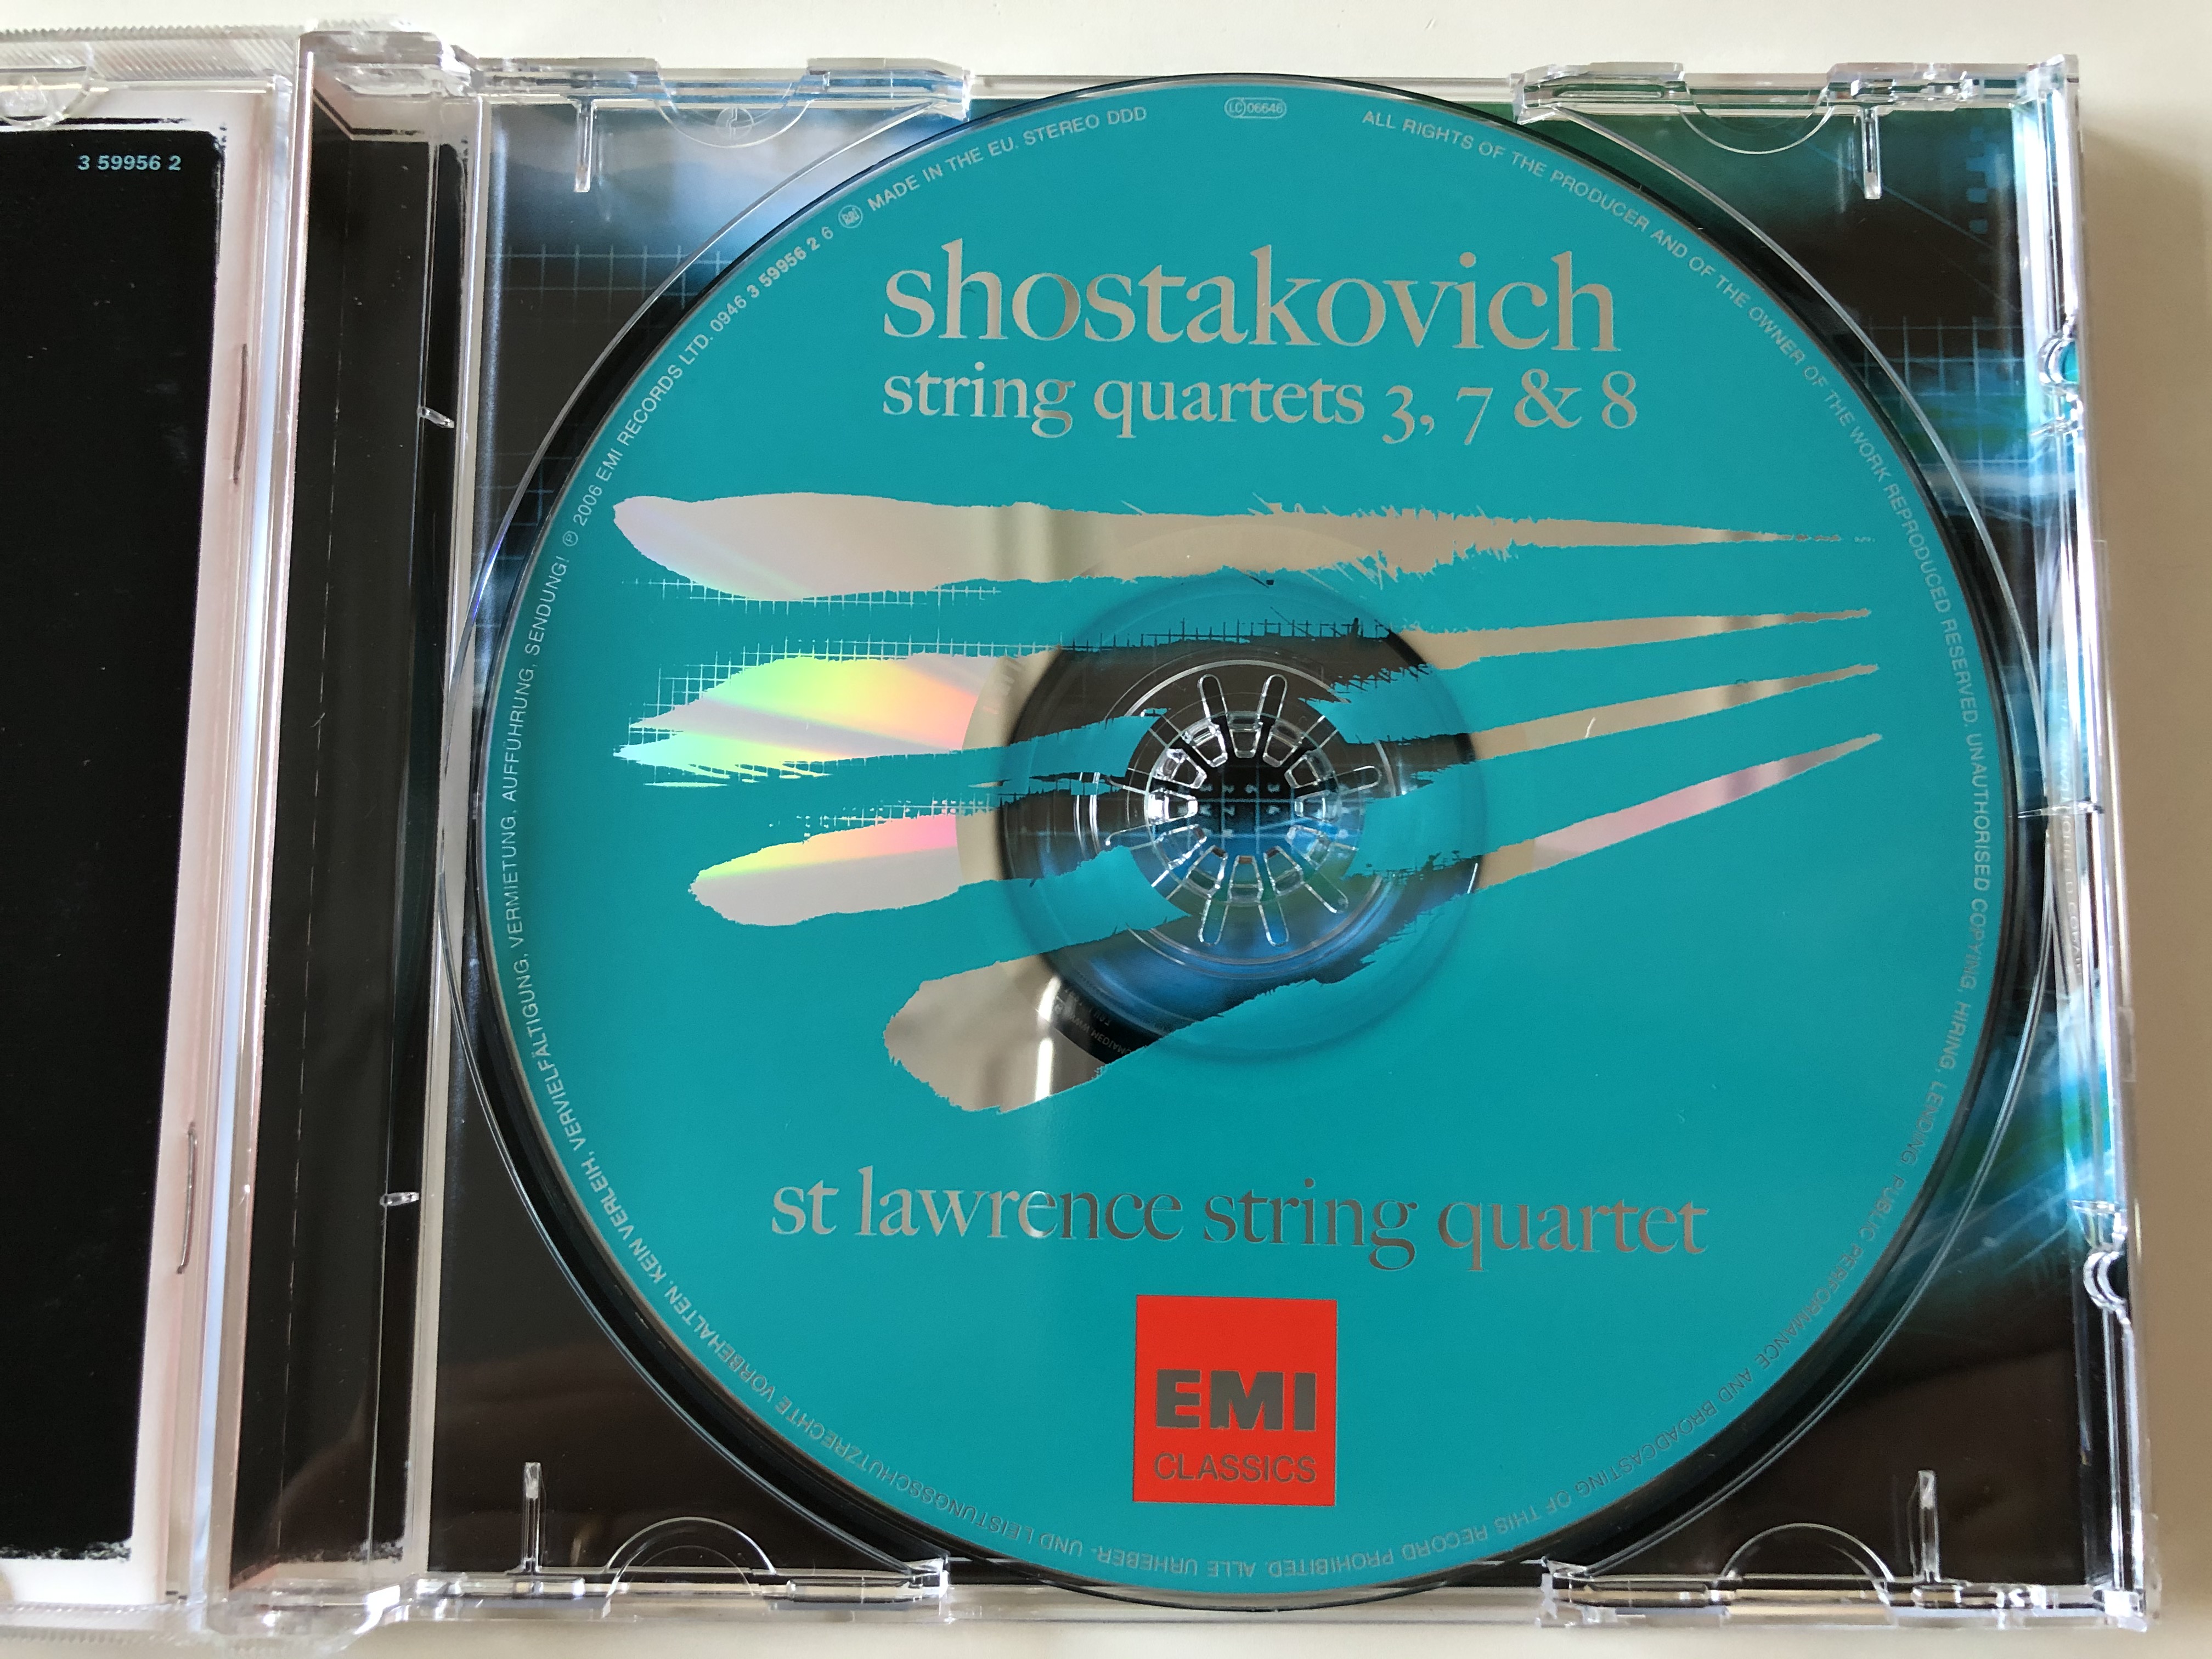 shostakovich-string-quartets-3-7-8-st-lawrence-string-quartet-audio-cd-2006-stereo-3-59956-2-6-.jpg